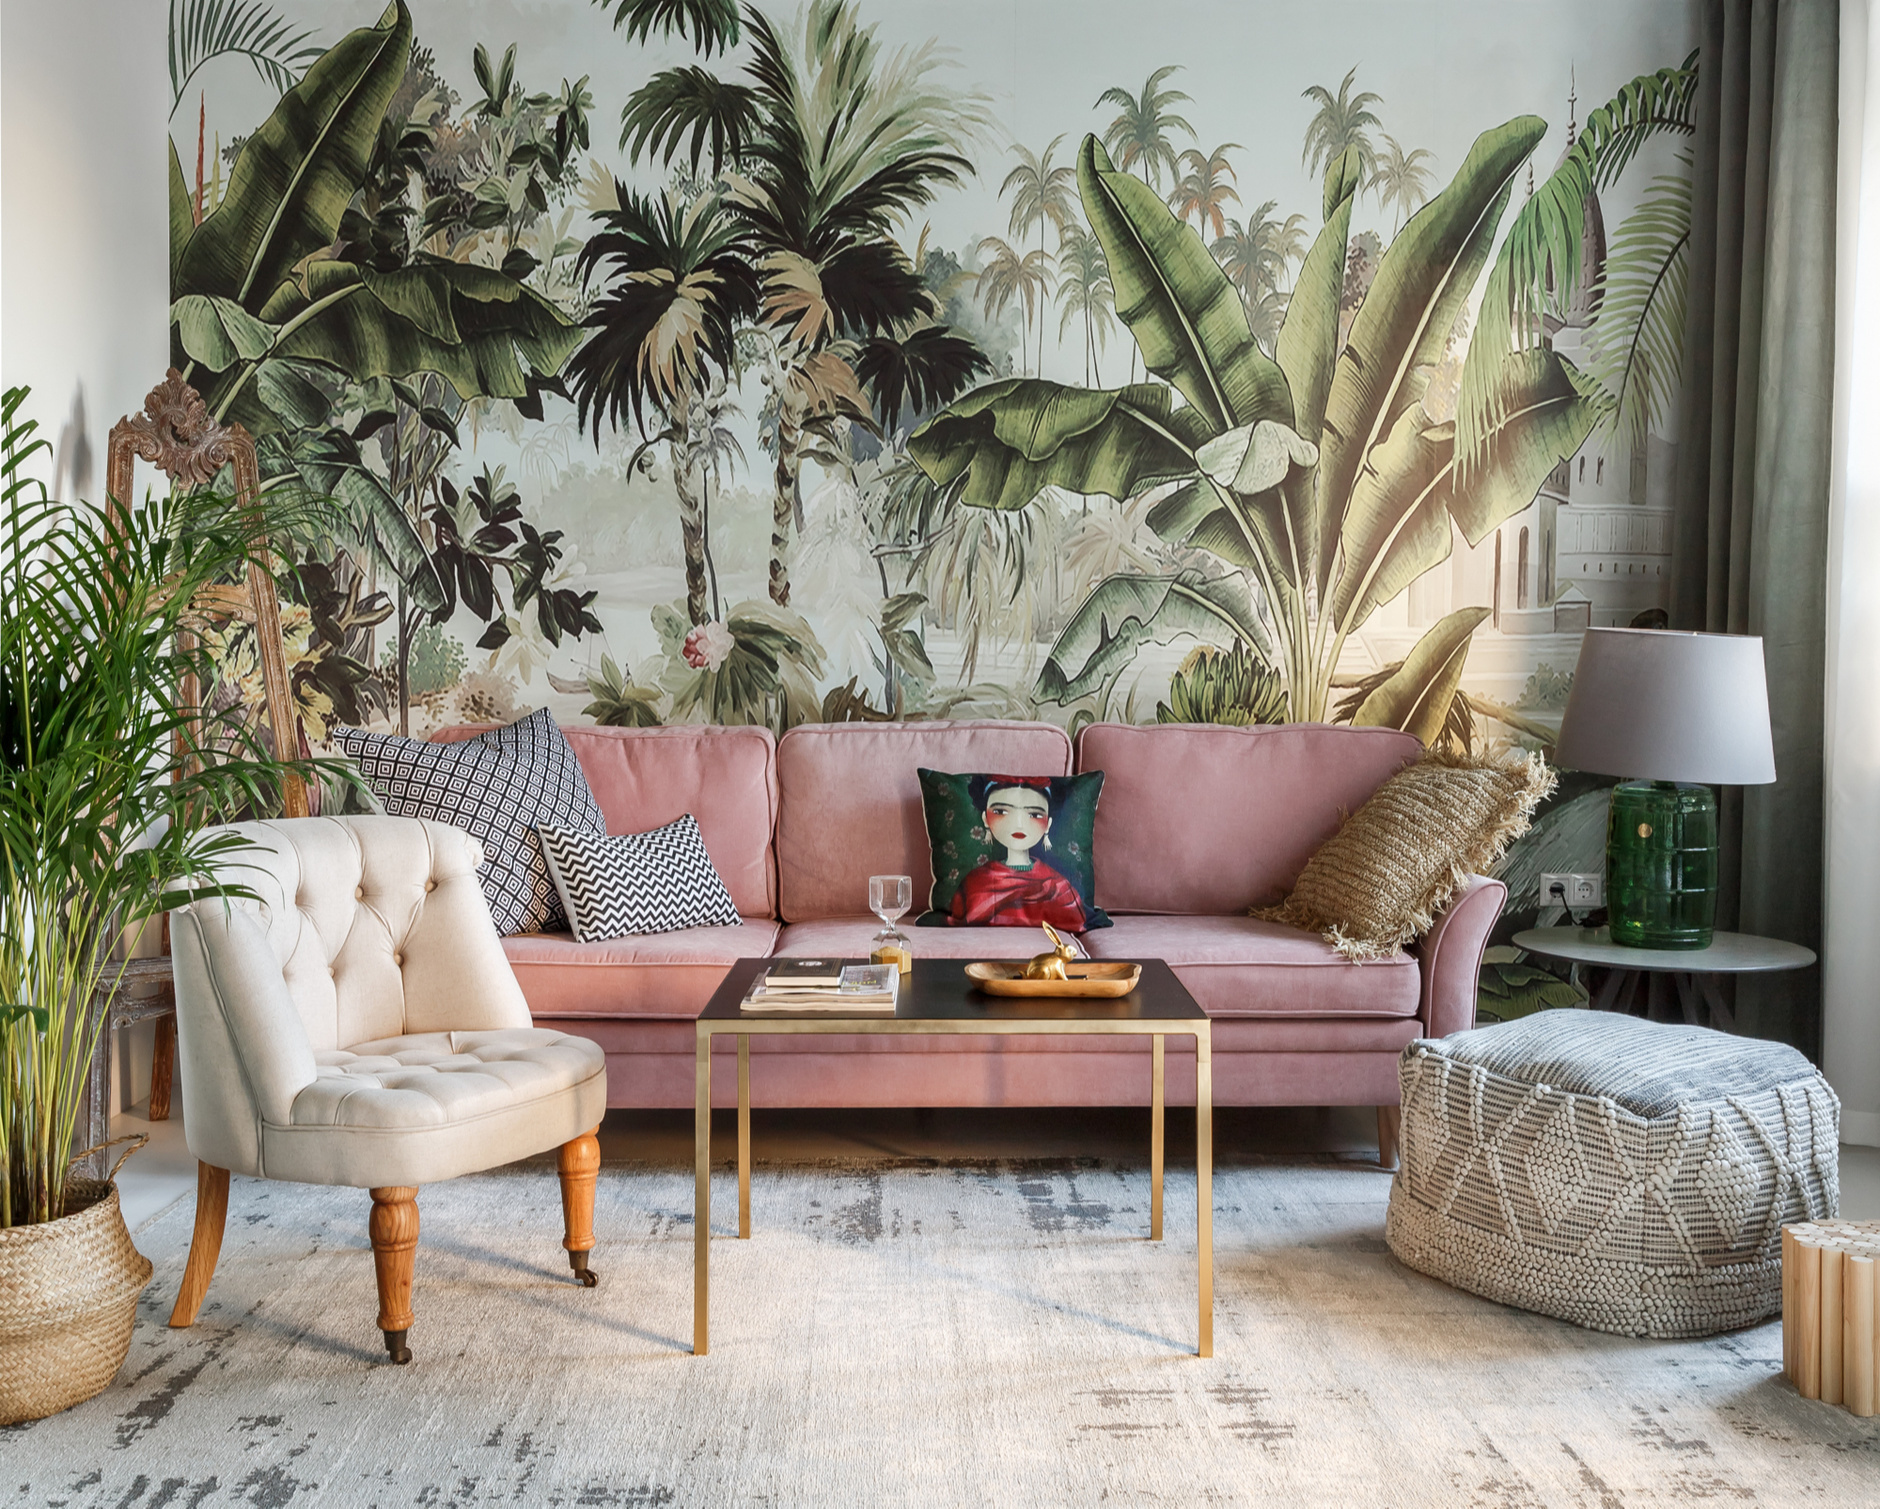 Bạn cũng có thể làm nổi bật khu vực sau ghế sofa bằng giấy dán tường hoa văn, họa tiết sống động, như phong cách nhiệt đới mùa Hè chẳng hạn.